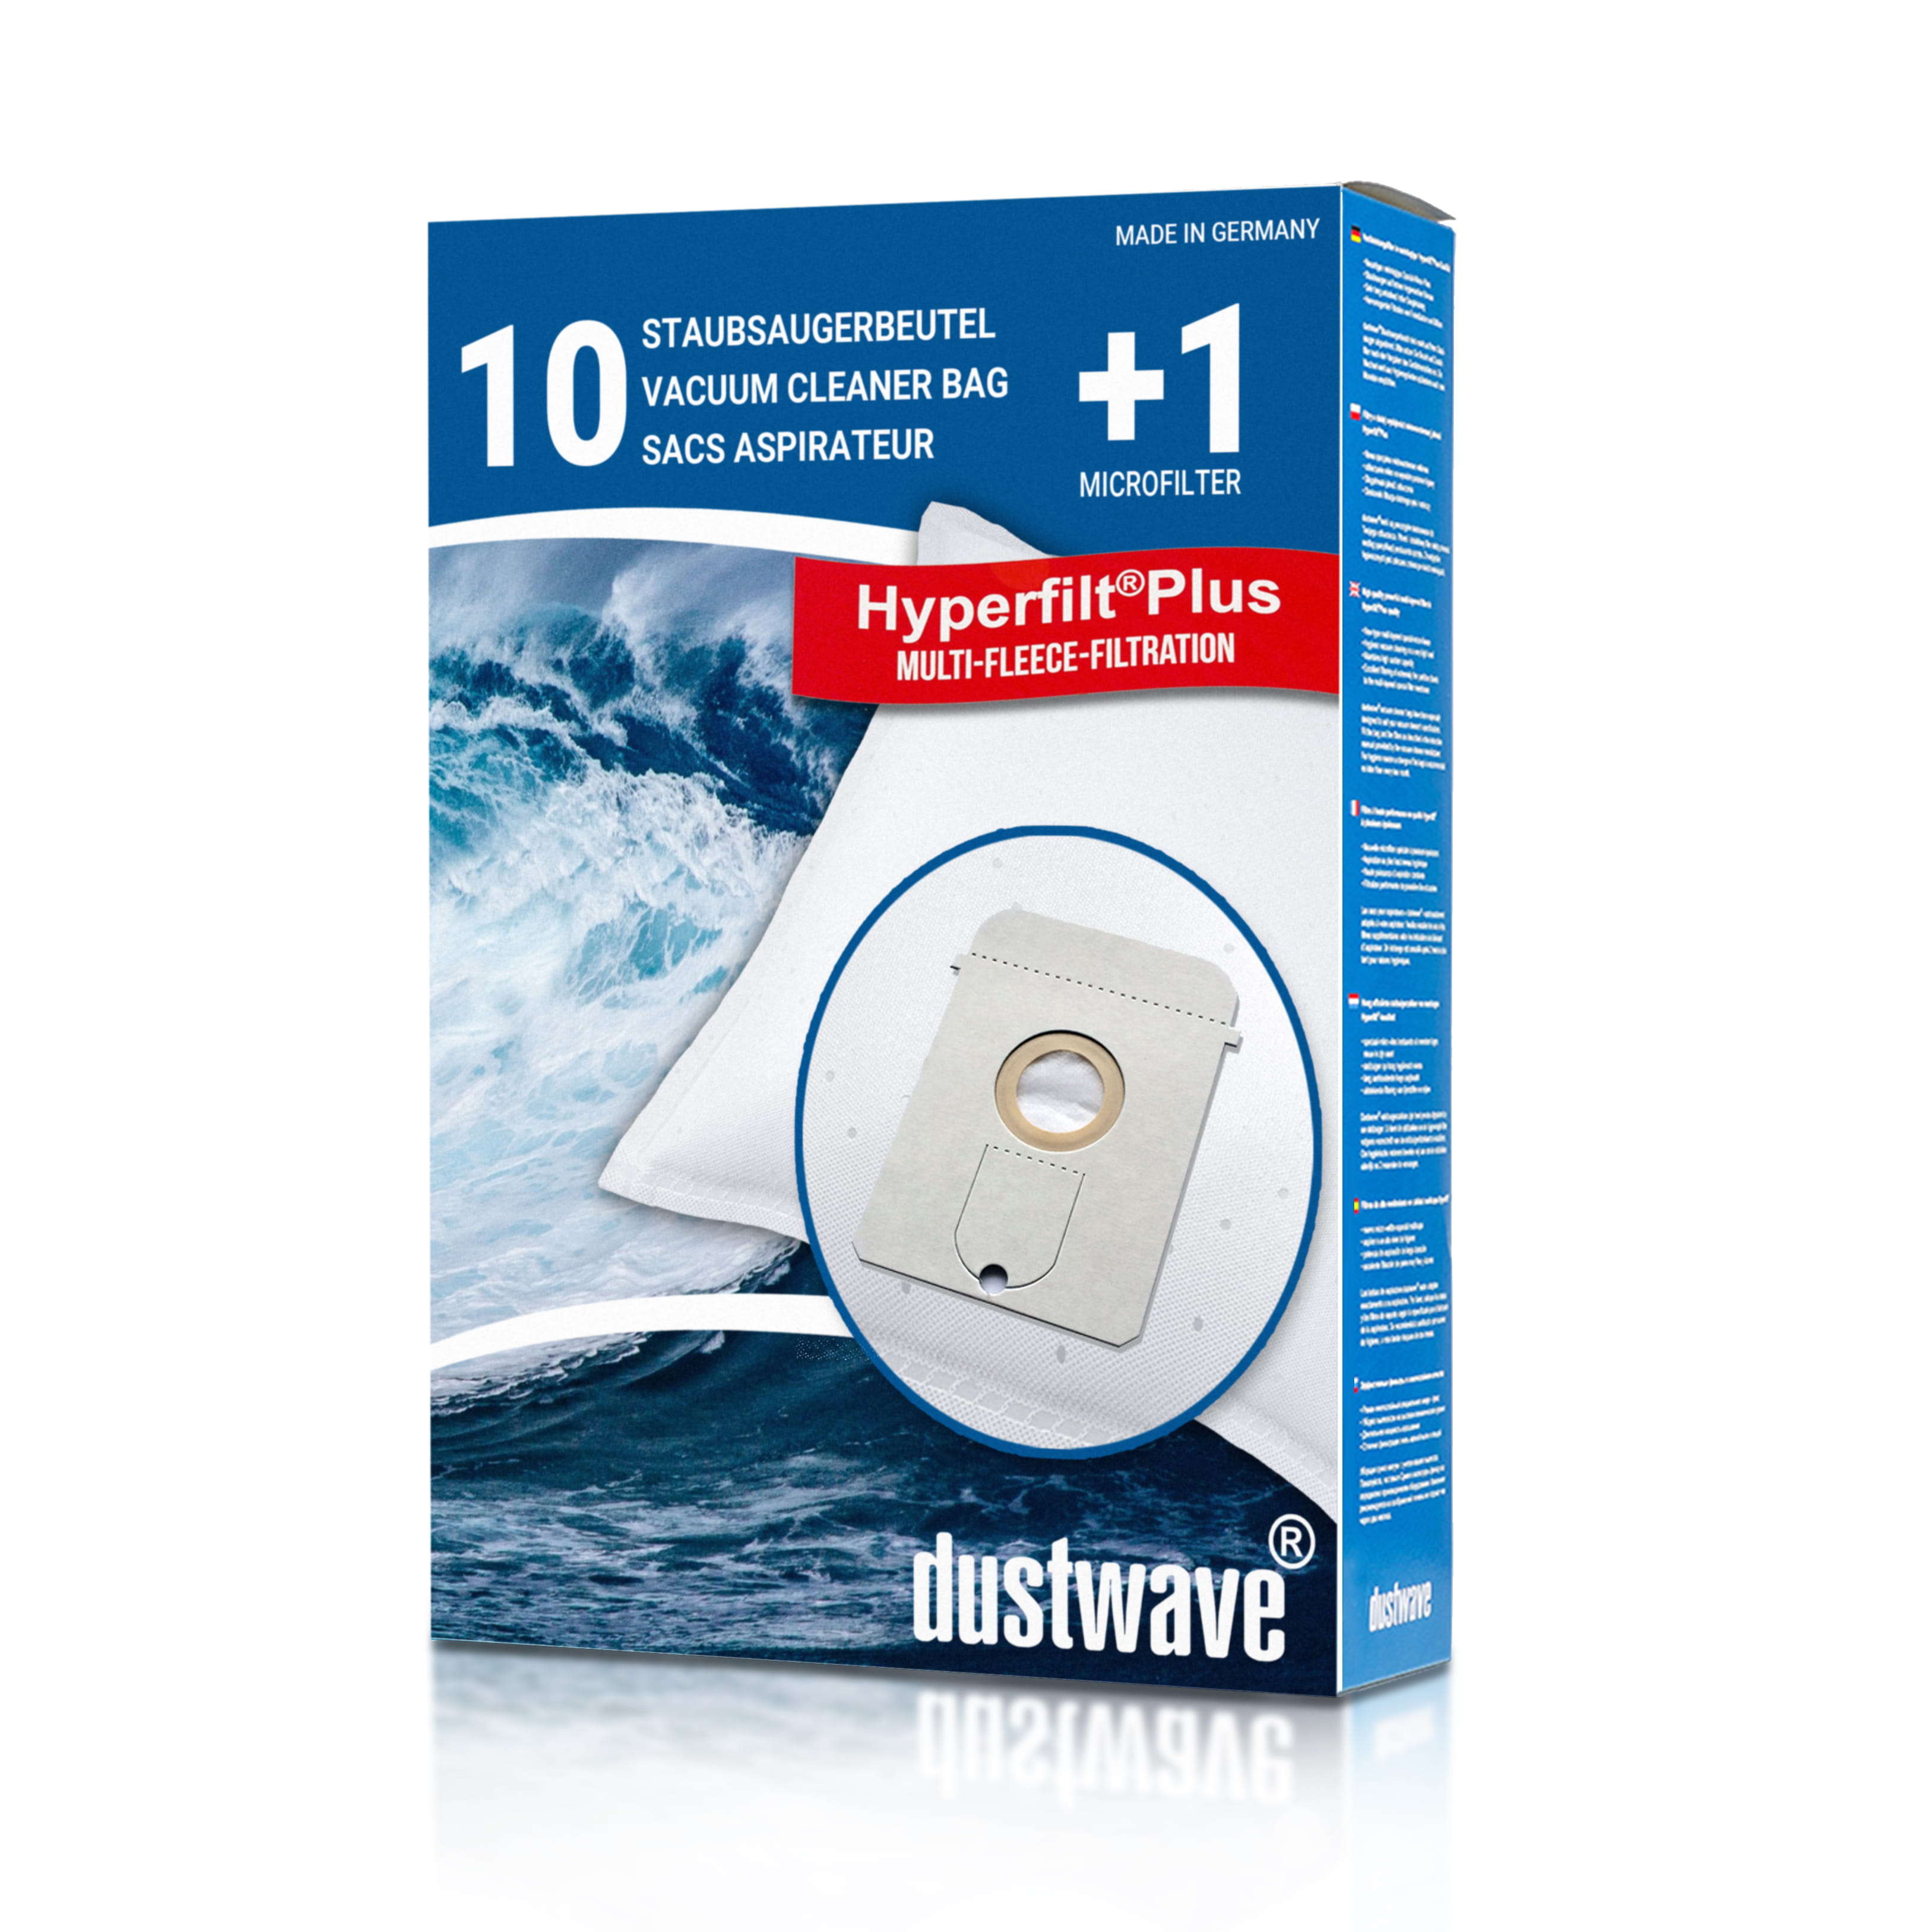 Dustwave® 10 Staubsaugerbeutel für AEG Vampyr TC Space - hocheffizient, mehrlagiges Mikrovlies mit Hygieneverschluss - Made in Germany